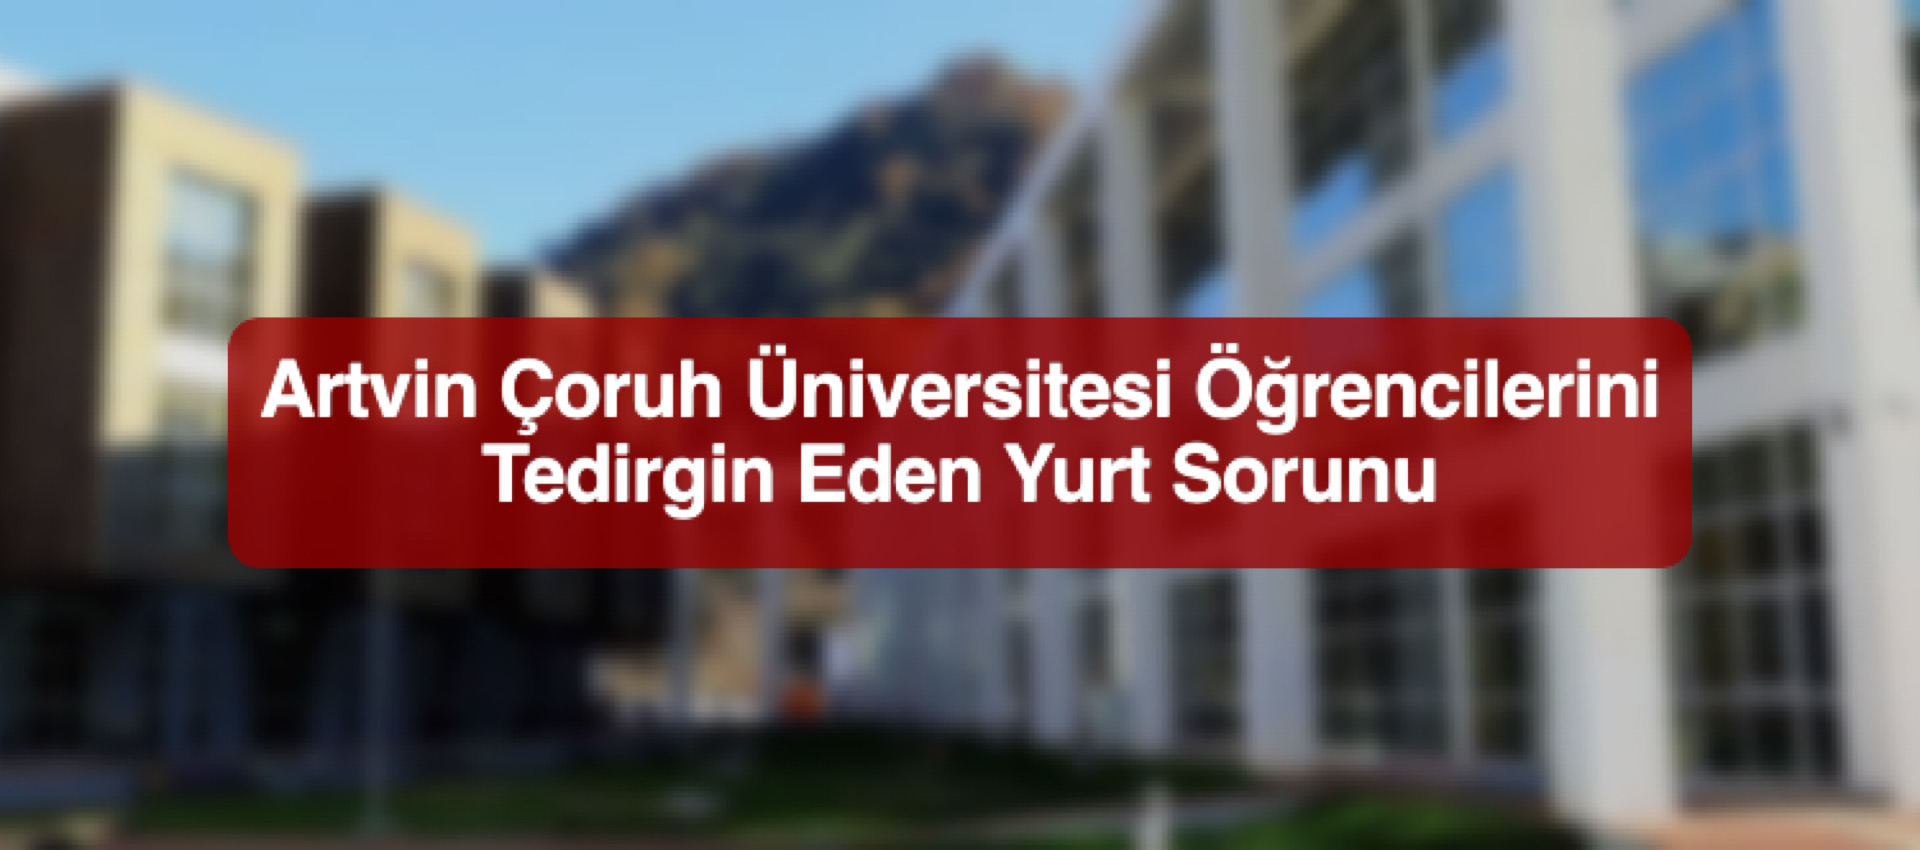 Artvin Çoruh Üniversitesi Öğrencilerini Tedirgin Eden Yurt Sorunu